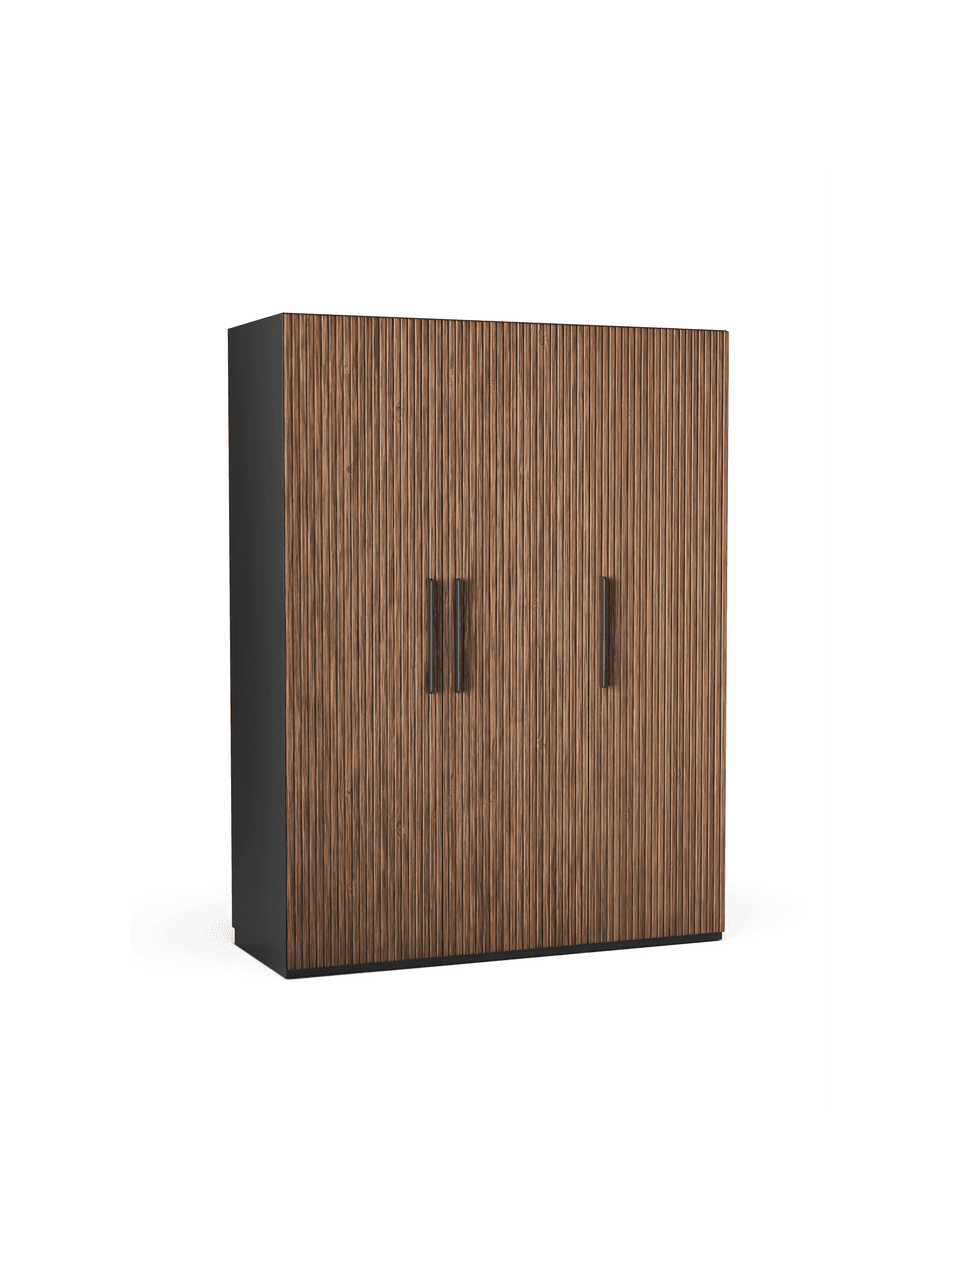 Szafa modułowa Simone, 3-drzwiowa, różne warianty, Korpus: płyta wiórowa z certyfika, Drewno naturalne, W 200 cm, Basic